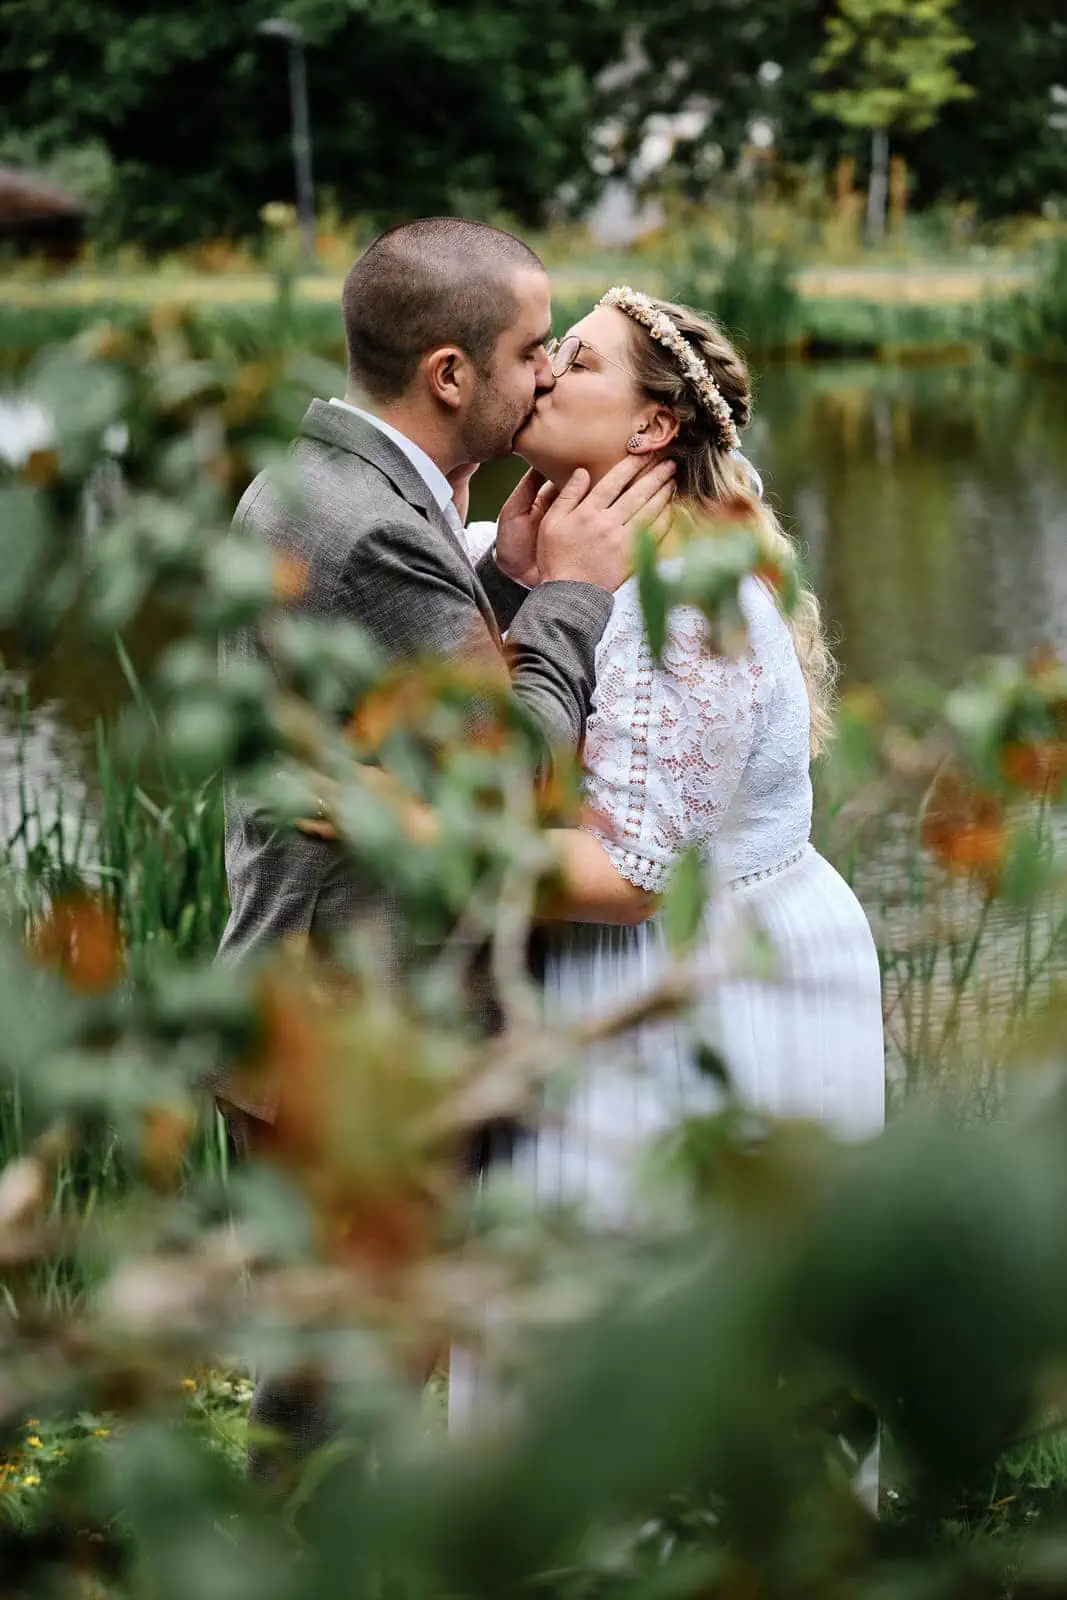 Eine romantische Aufnahme, das Brautpaar küsst sich liebevoll und werden dabei von Blättern im Vordergrund eingerahmt.